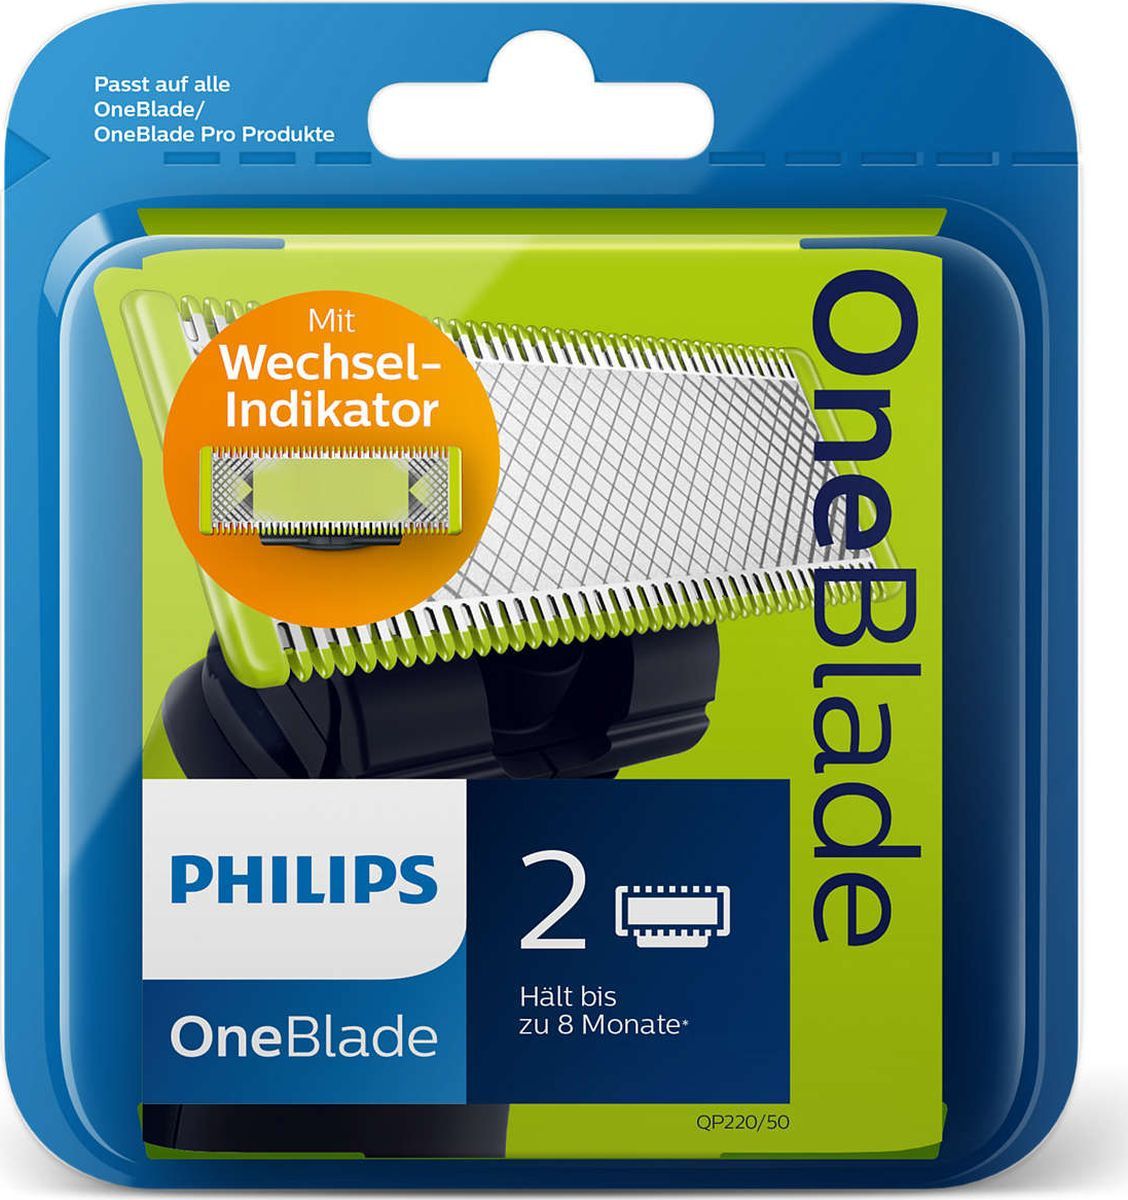   Philips QP220/50  OneBlade  OneBlade Pro, 2 